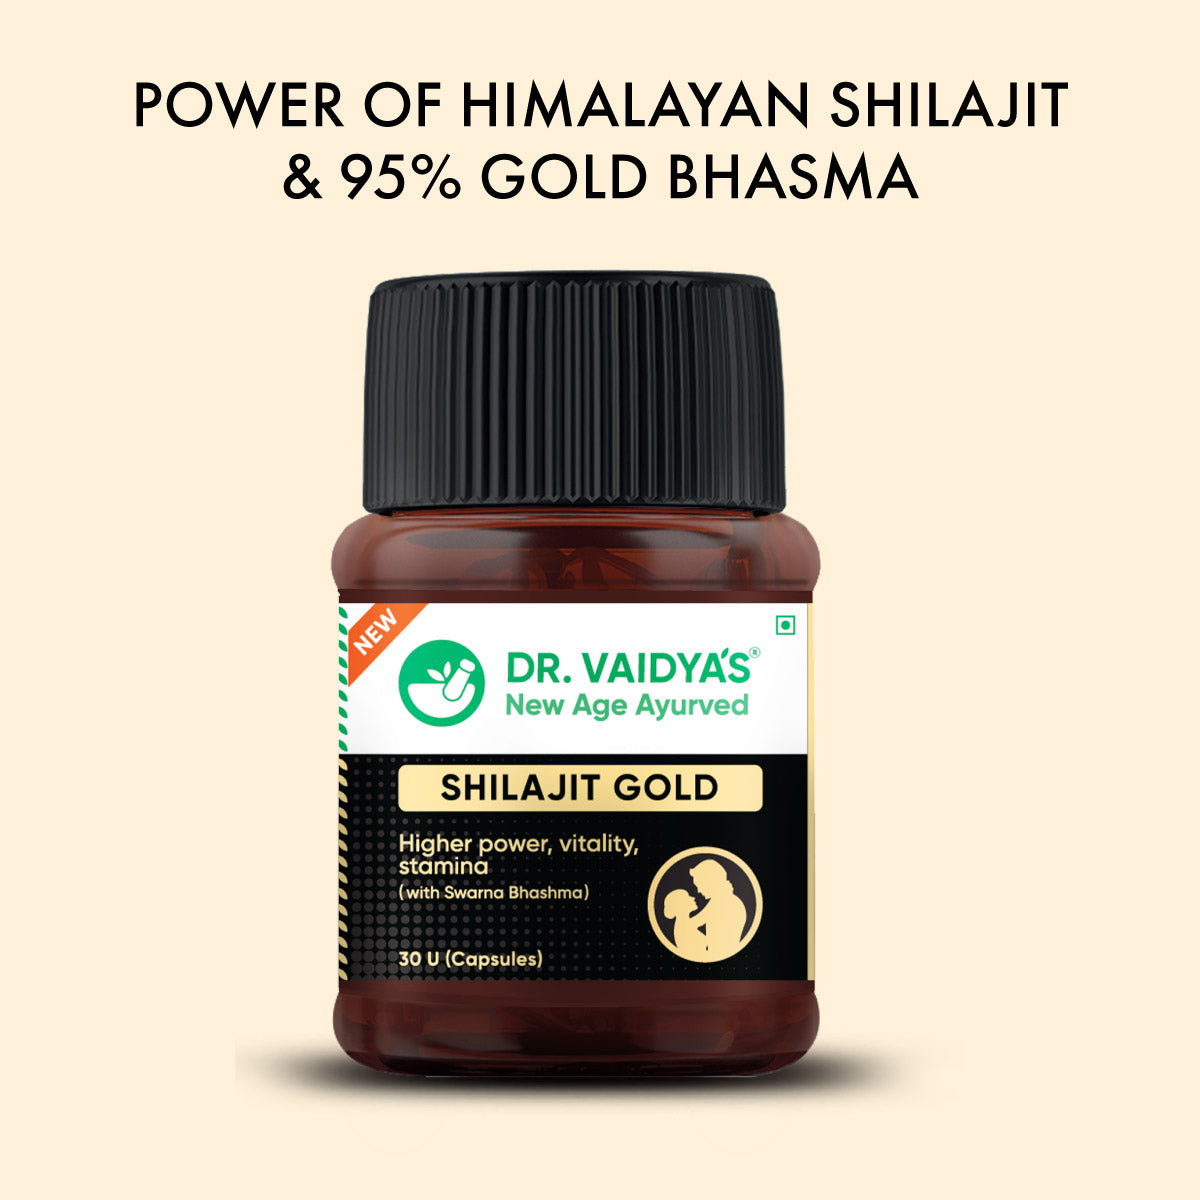 Dr. Vaidya's Shilajit Gold